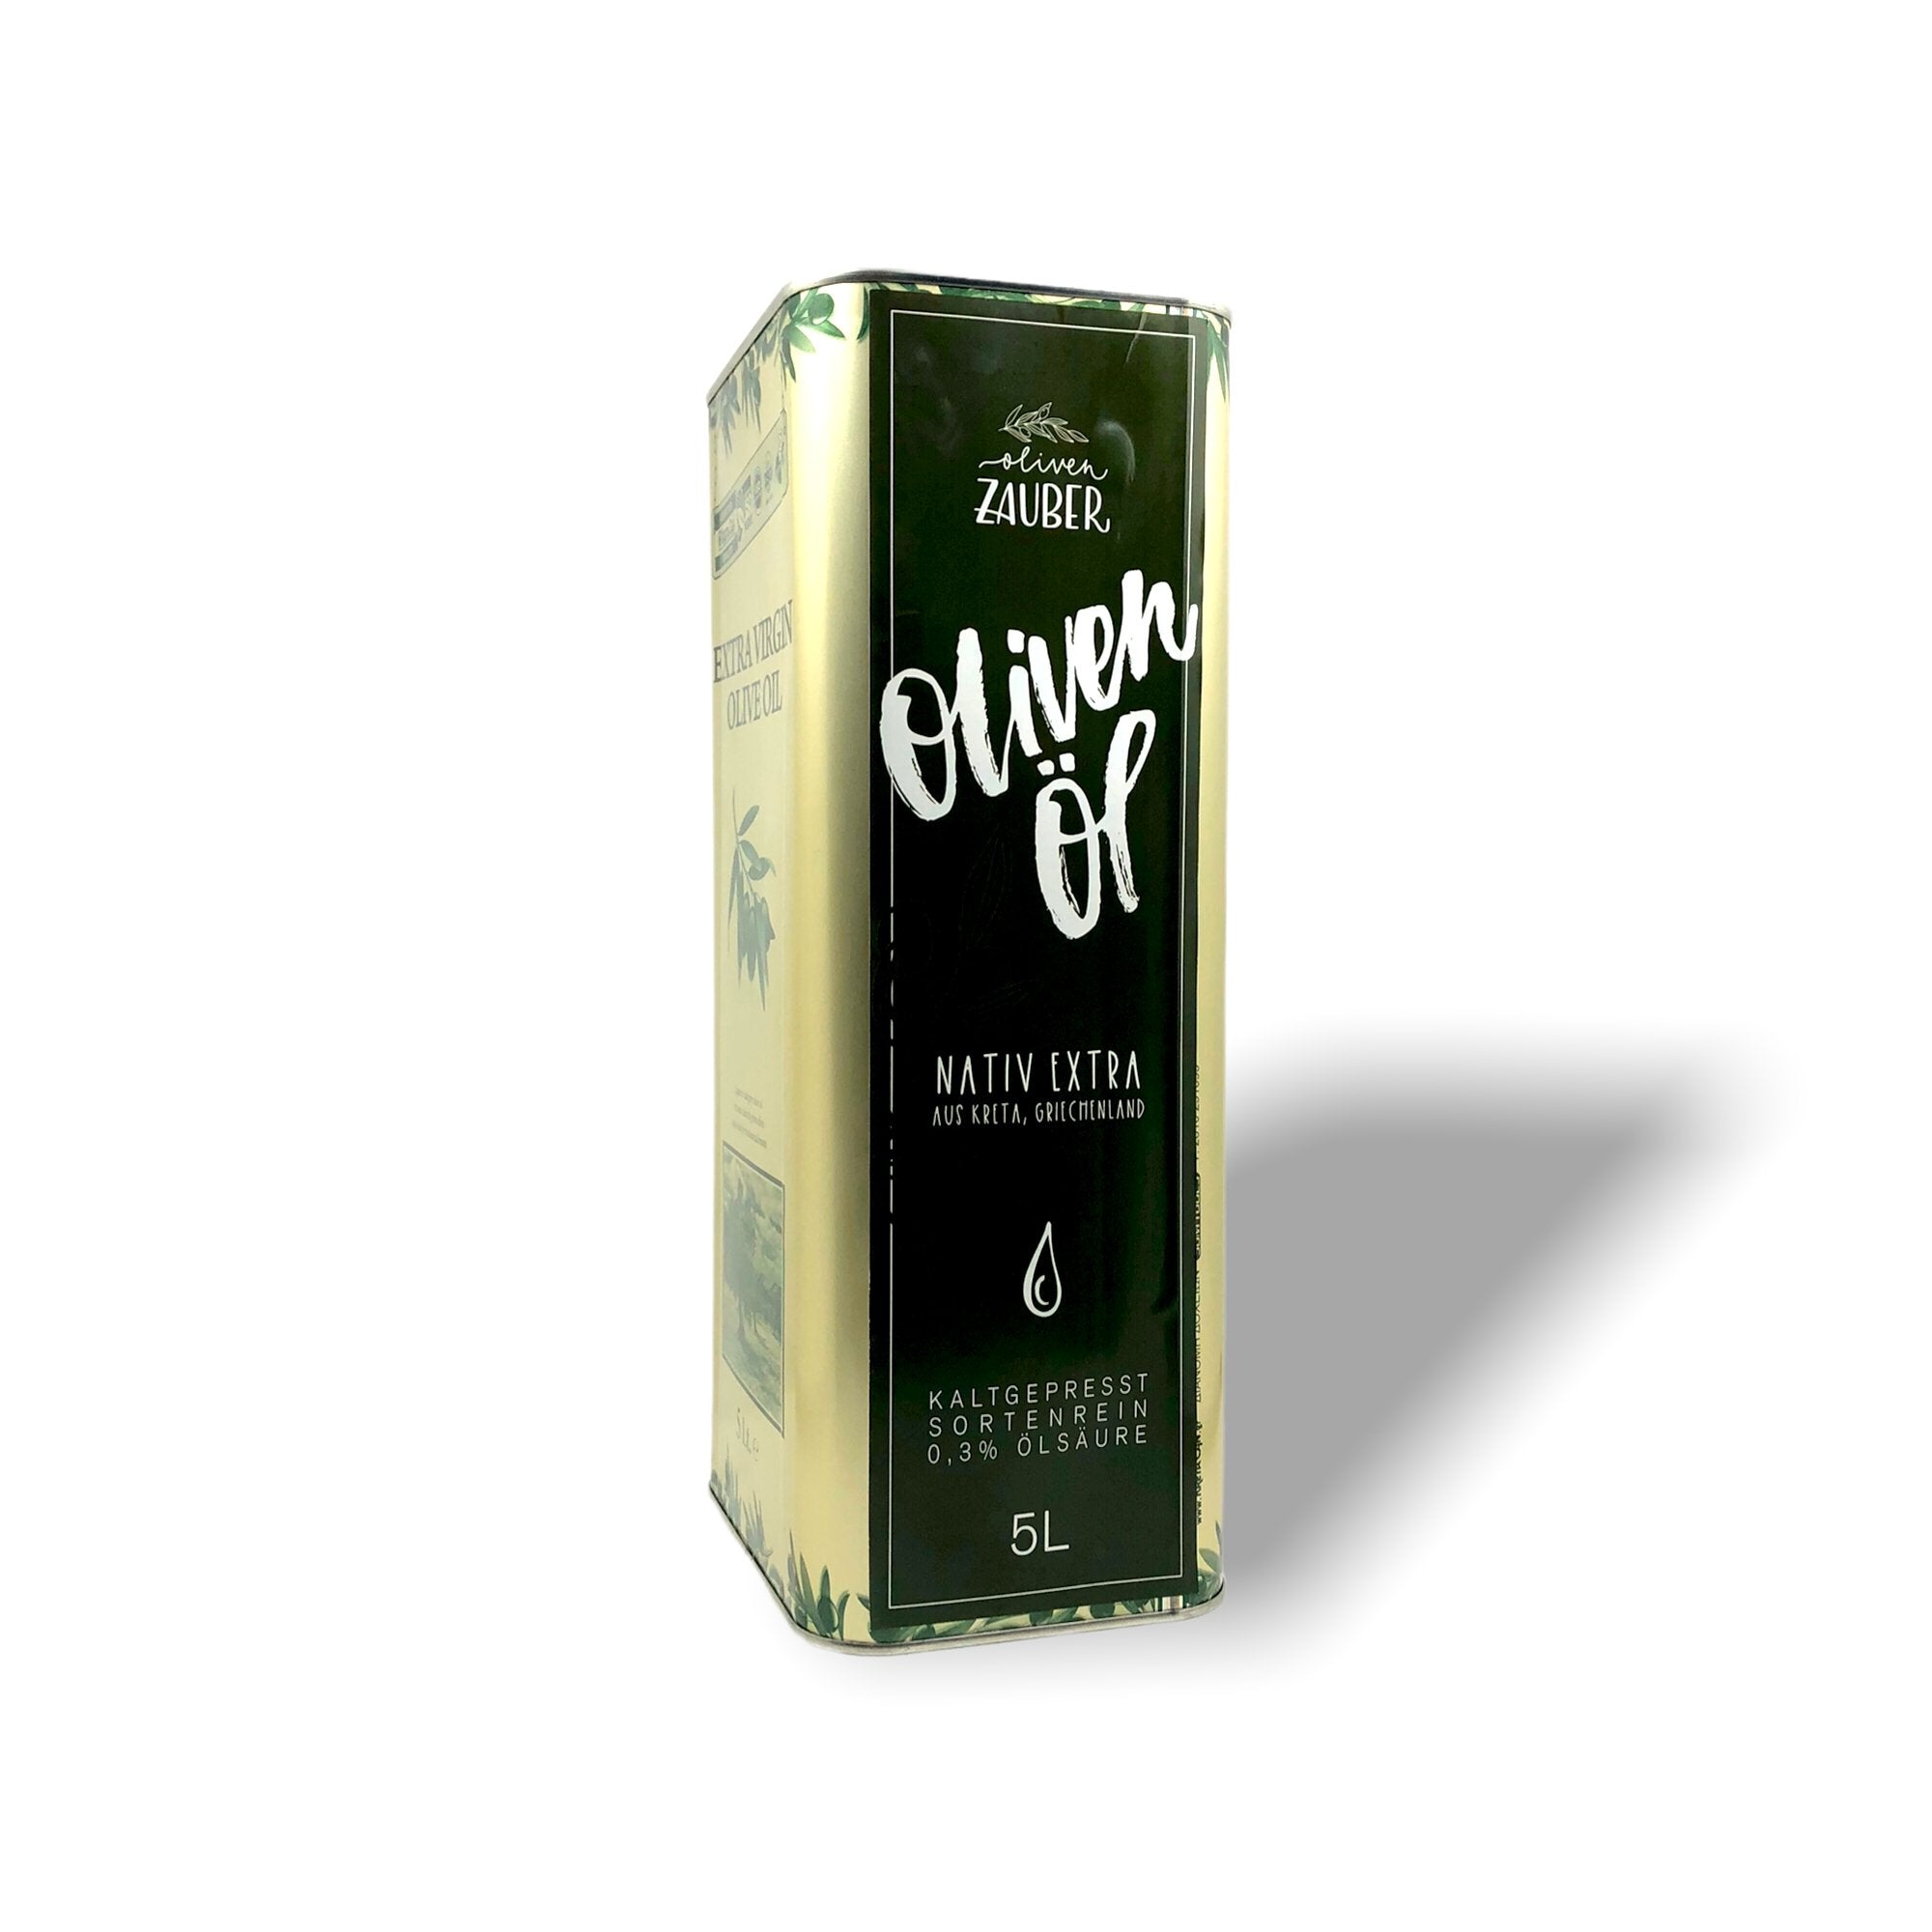 Griechisches Olivenöl nativ extra aus Kreta – 5 Liter Kanister